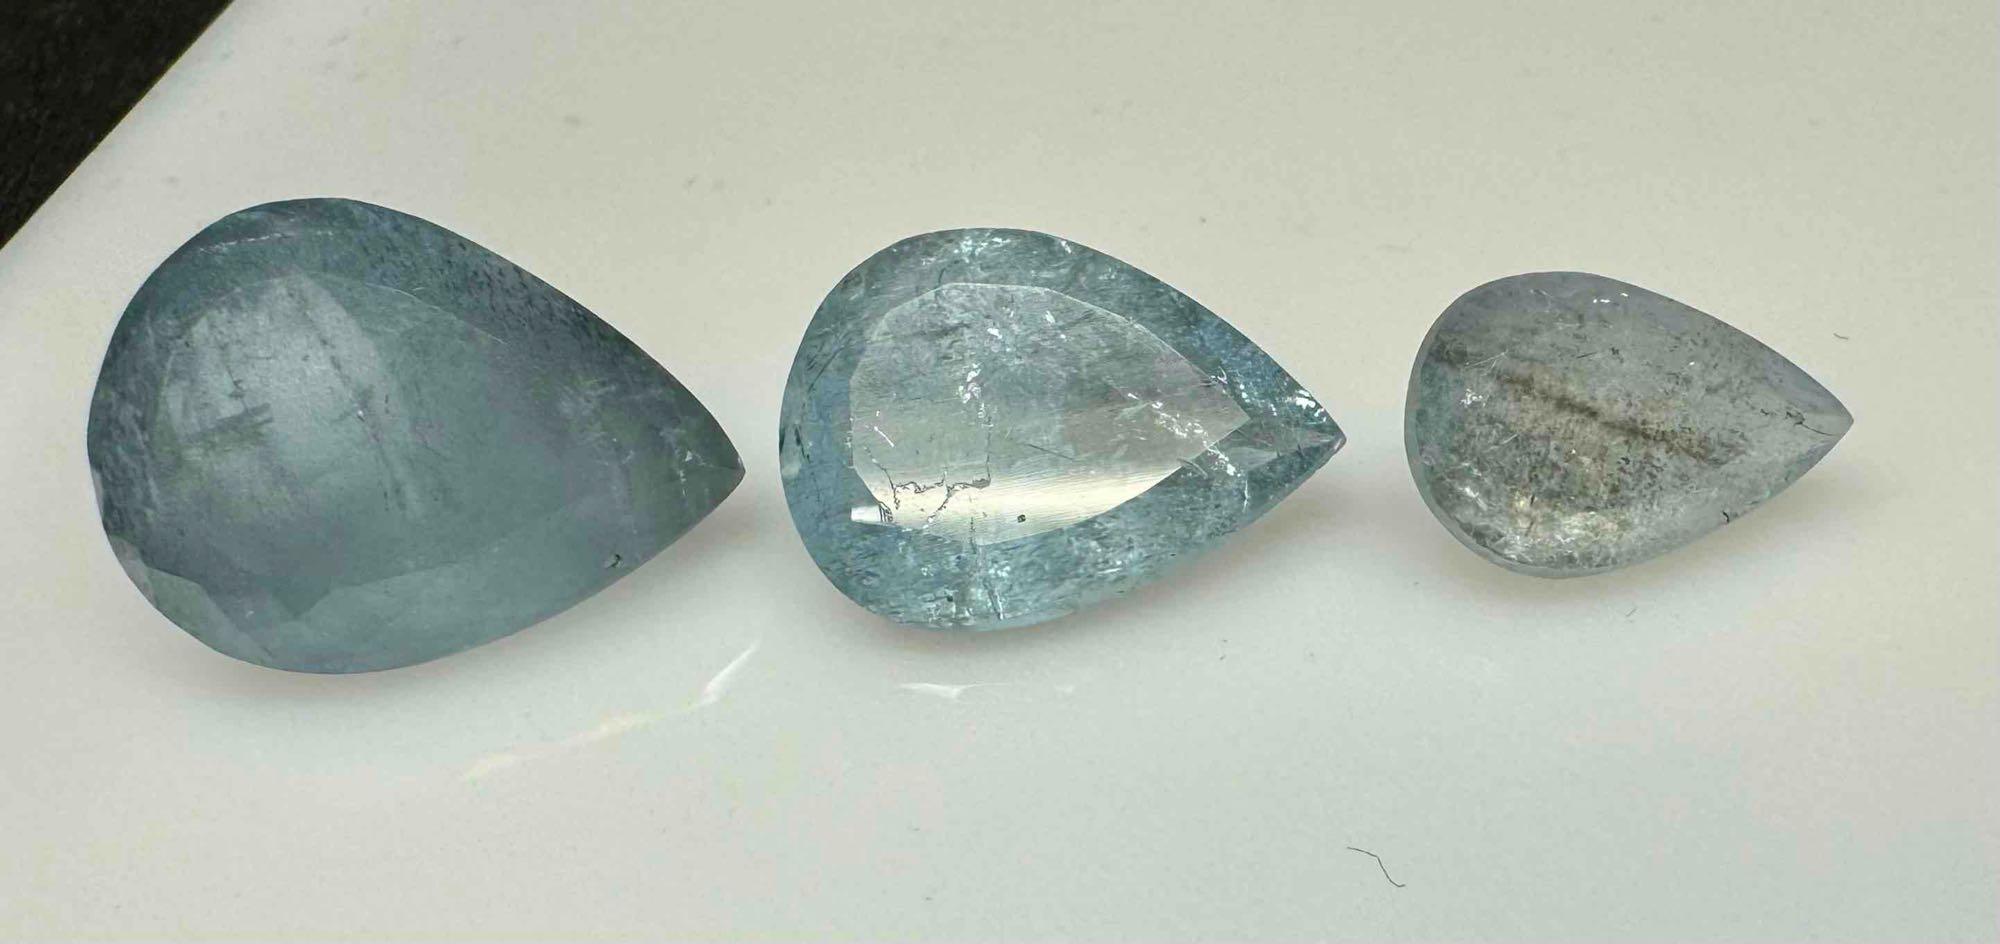 3 Aquamarine Pear Cut Gemstones 21.3ct Total